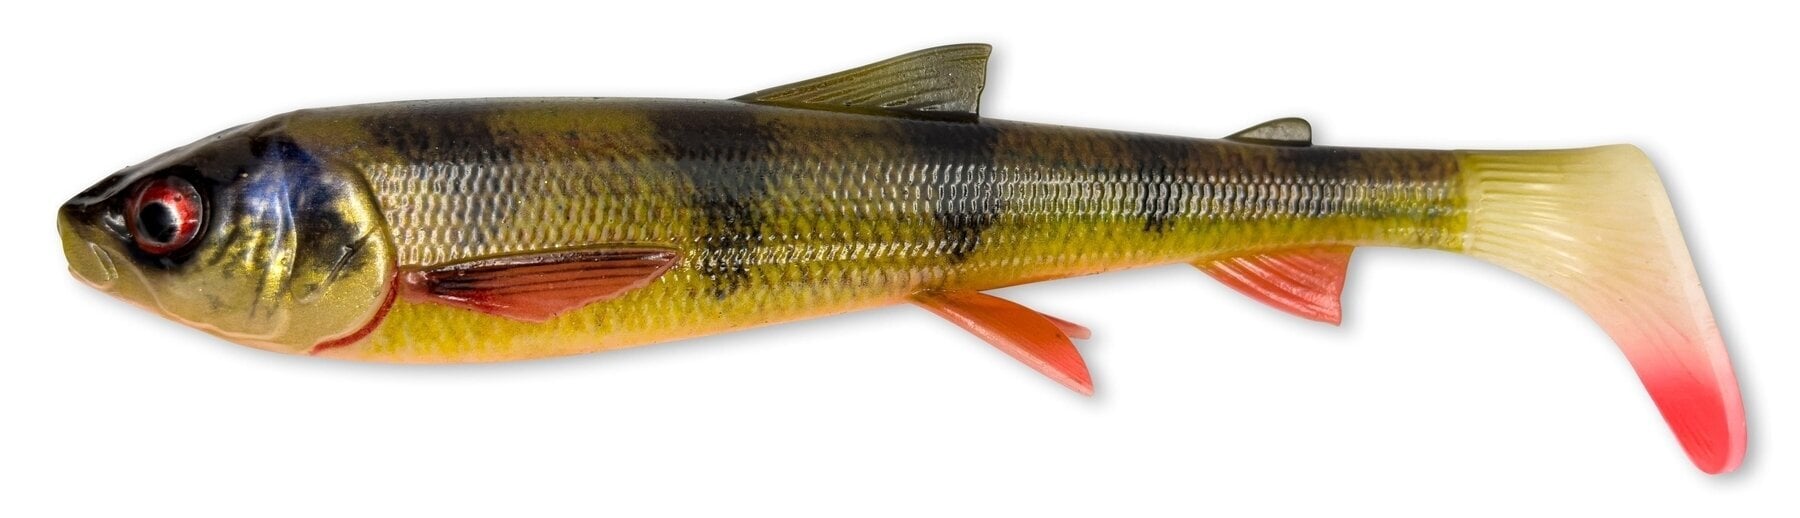 Isca de borracha Savage Gear 3D Whitefish Shad 2 pcs Perch 17,5 cm 42 g Isca de borracha